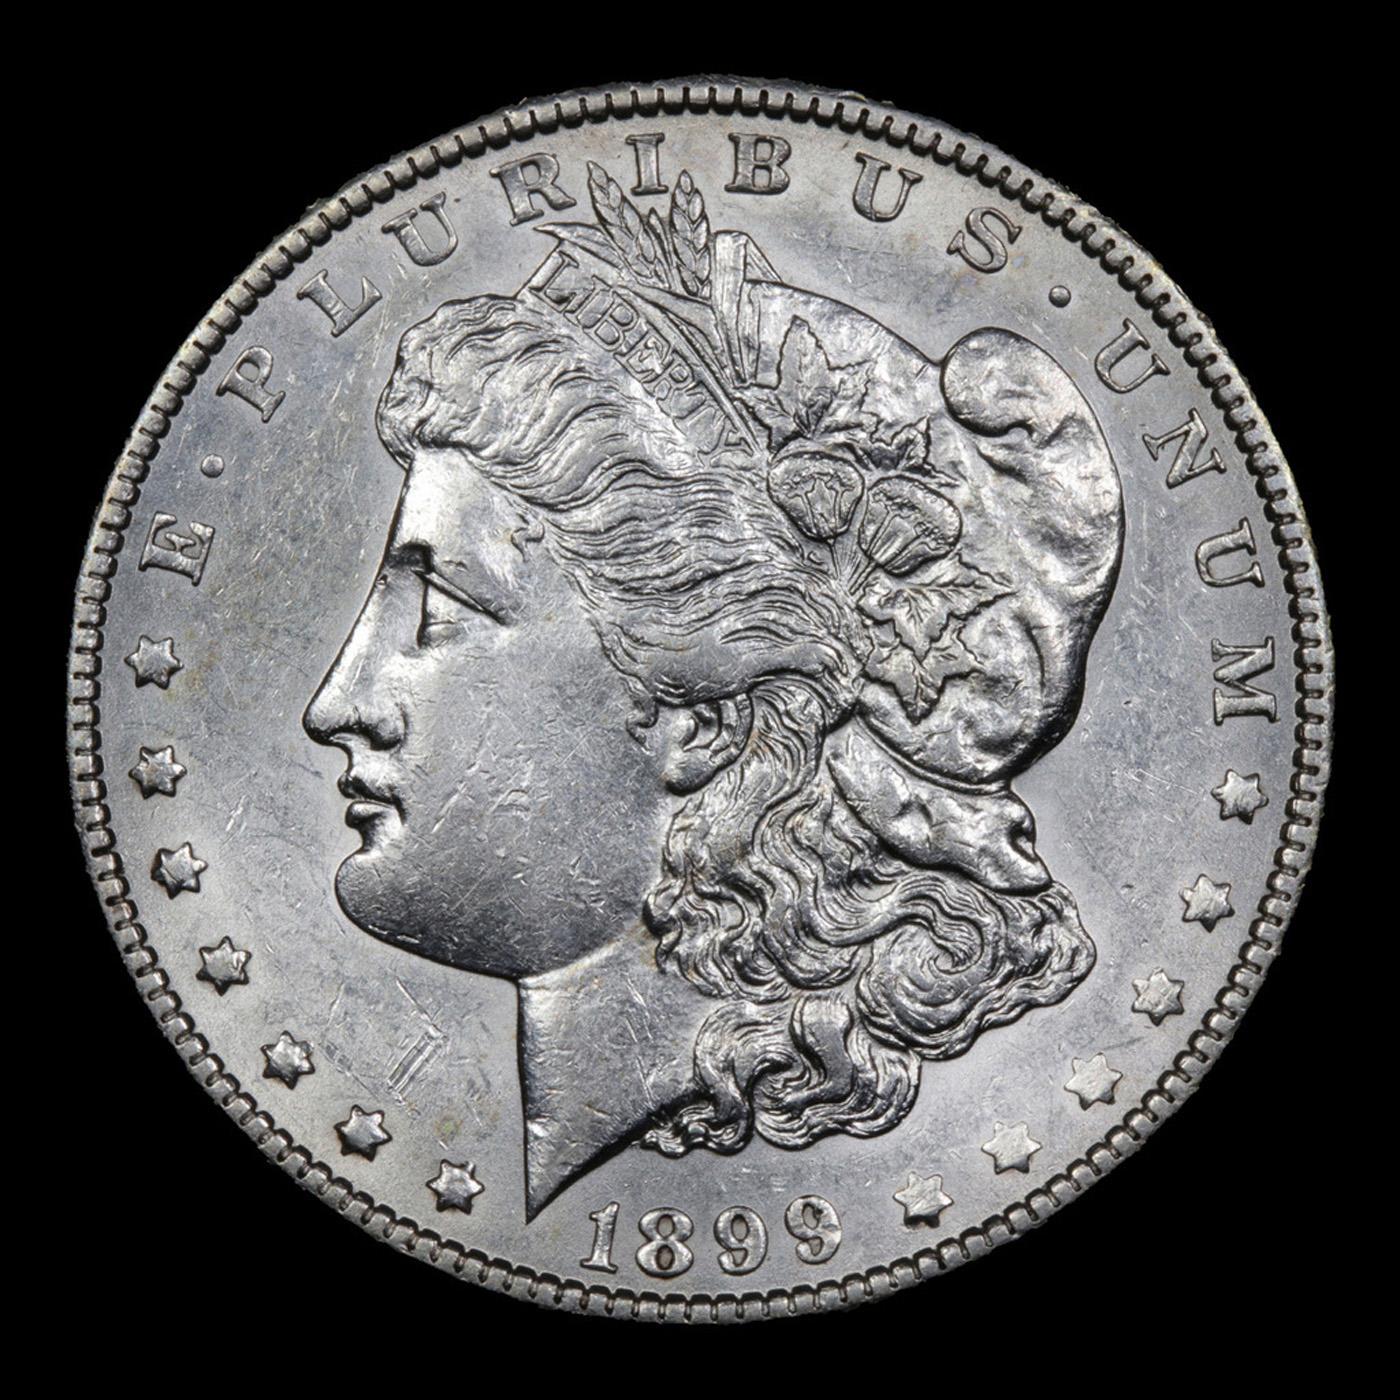 1899-o Morgan Dollar 1 Grades Choice AU/BU Slider